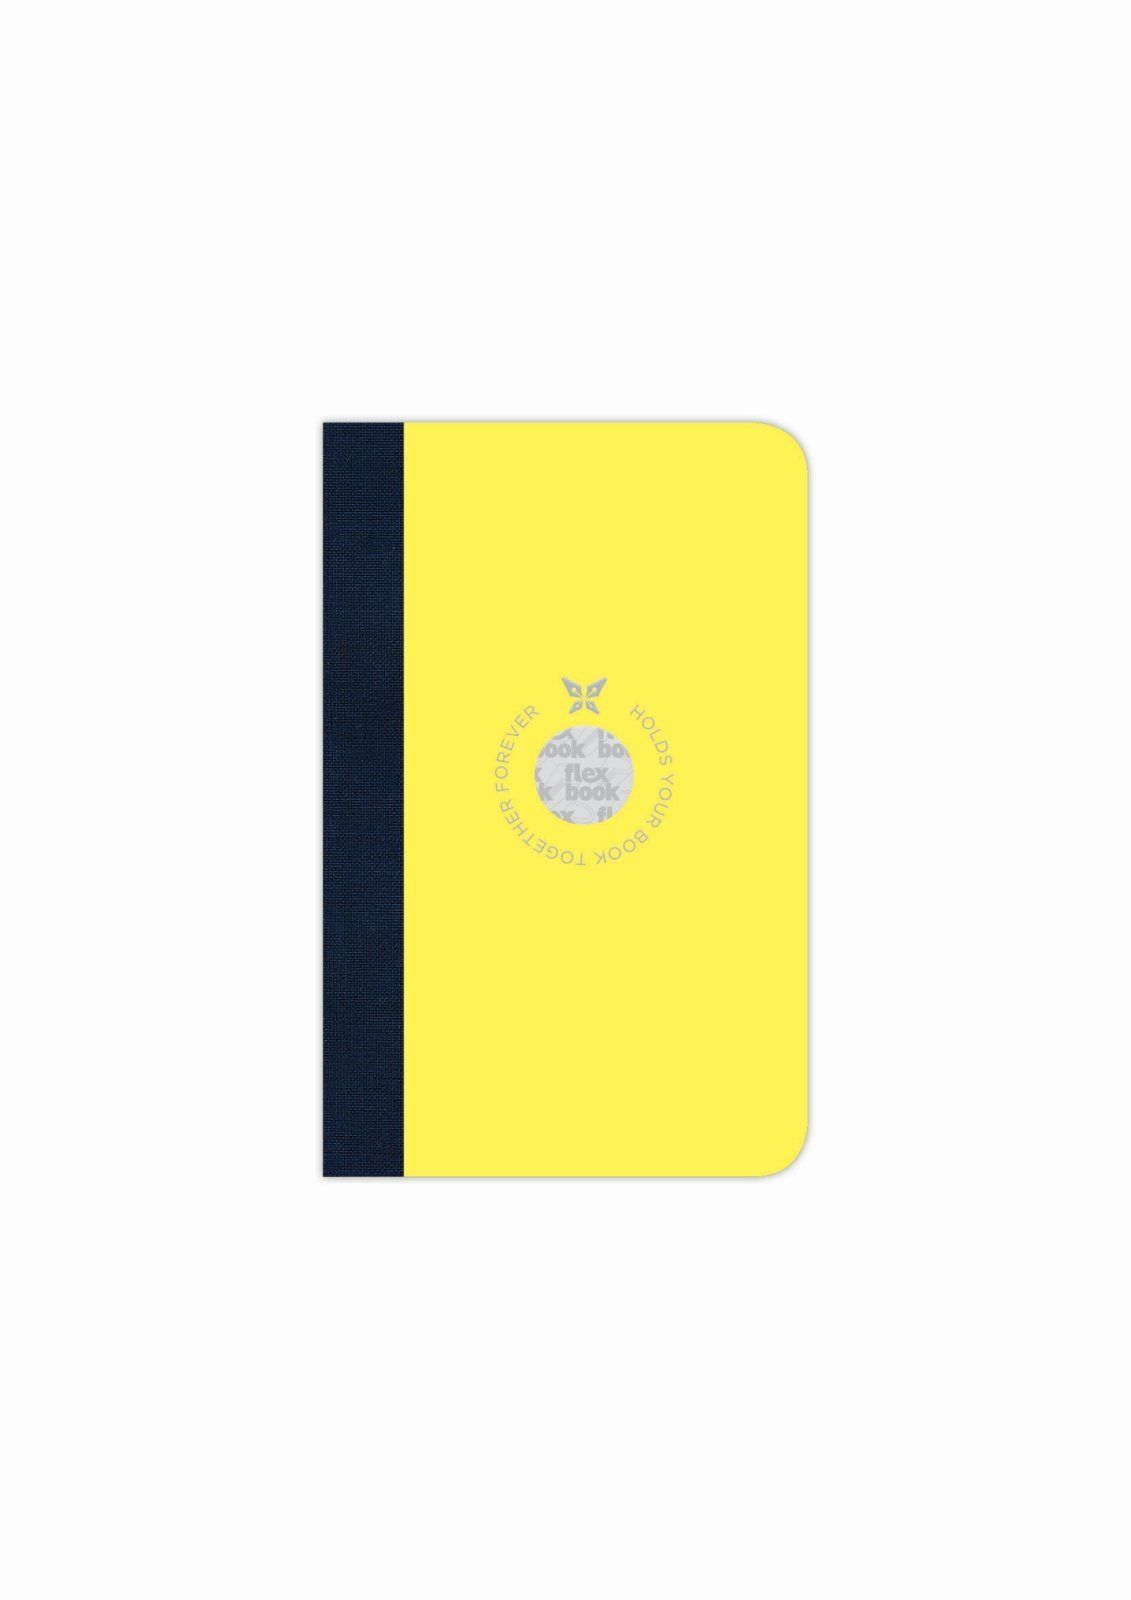 Ökopapiereinband Notizbuch 160 Seiten viele Liniert Größen/Fa 9*14 cm Smartbook Flexbook Gelb Flexbook